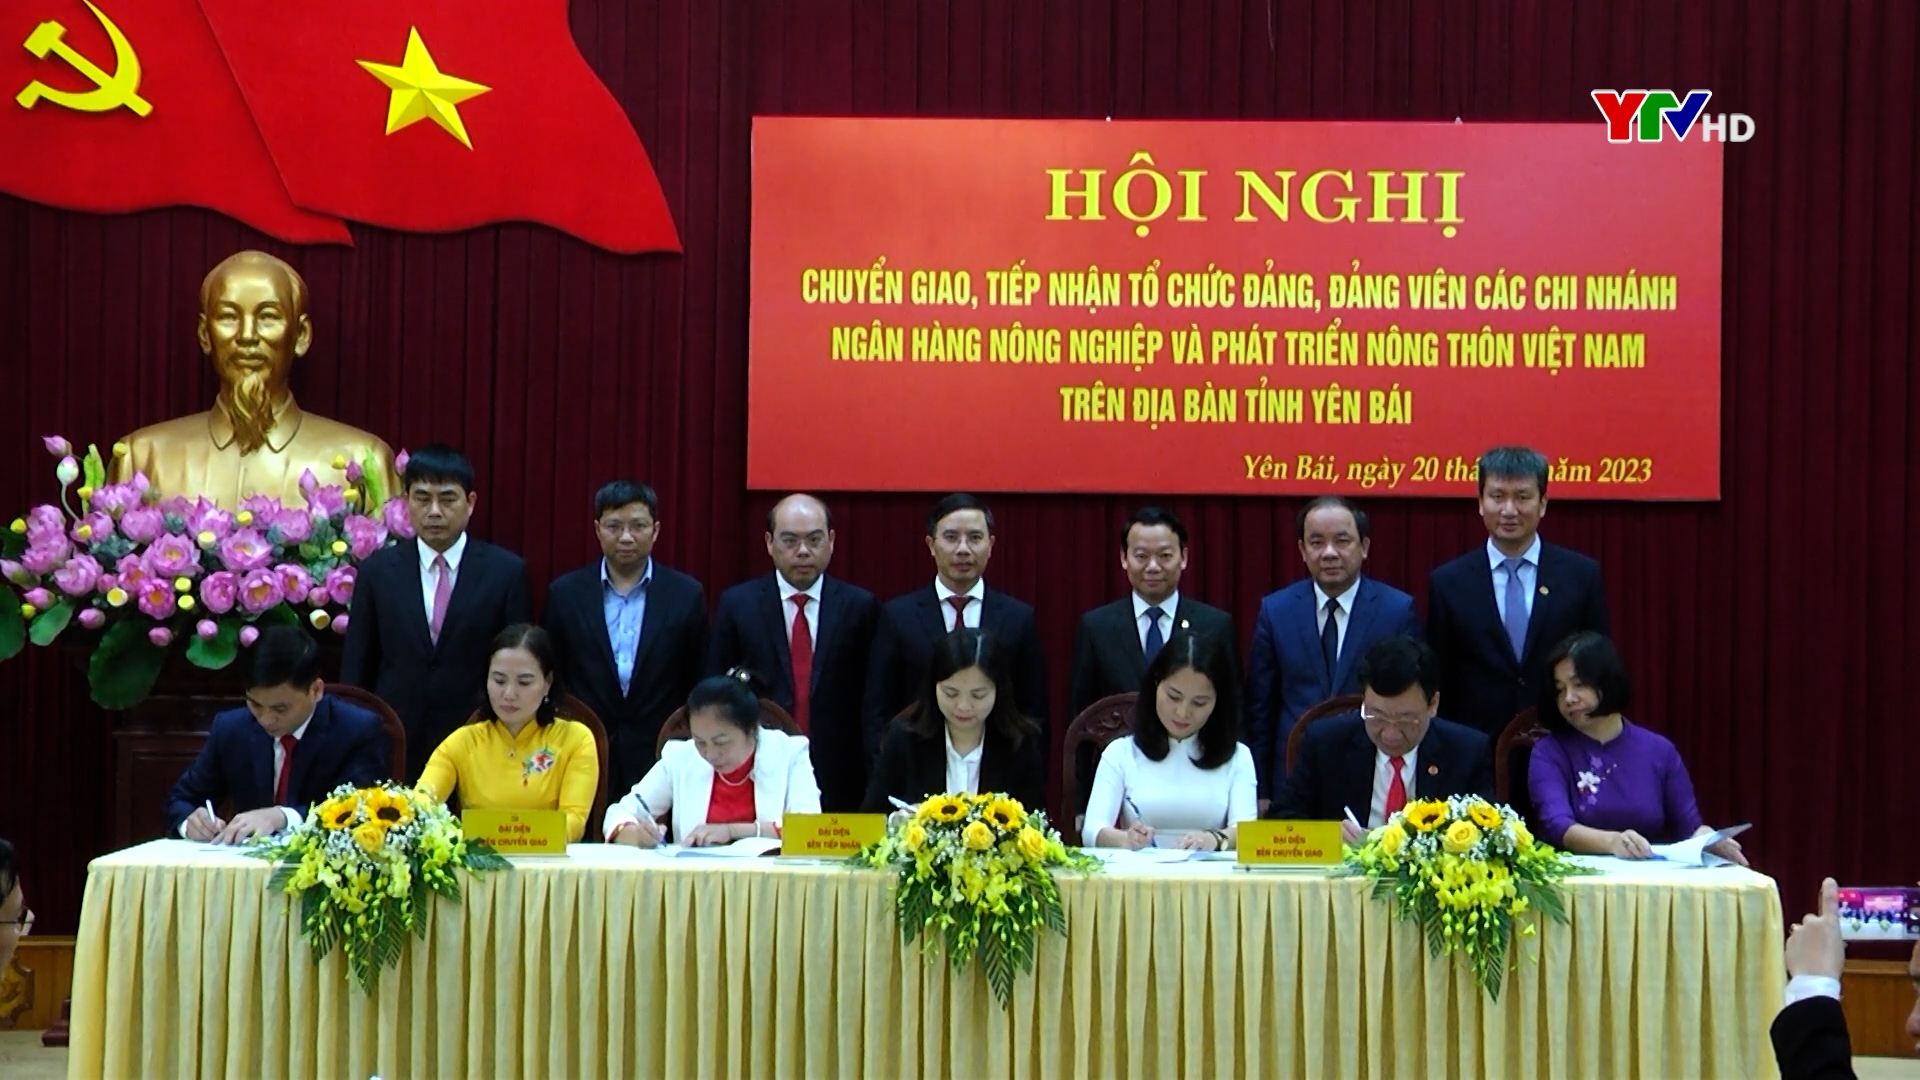 Hội nghị chuyển giao, tiếp nhận tổ chức Đảng, đảng viên các chi nhánh Ngân hàng NN&PTNT Việt Nam trên địa bàn tỉnh Yên Bái